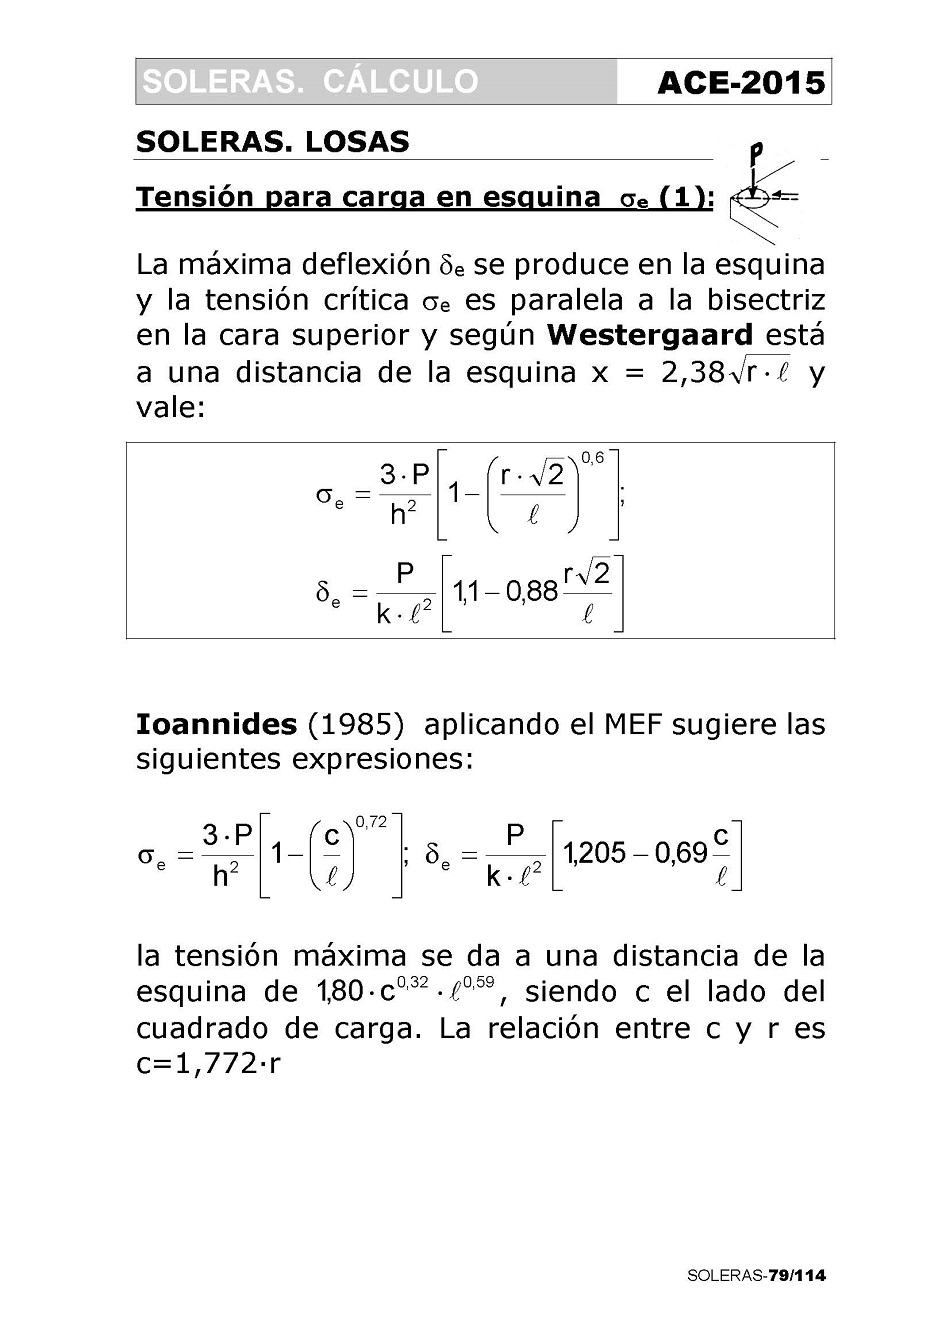 Cálculo de Soleras de Hormigón. Página 79